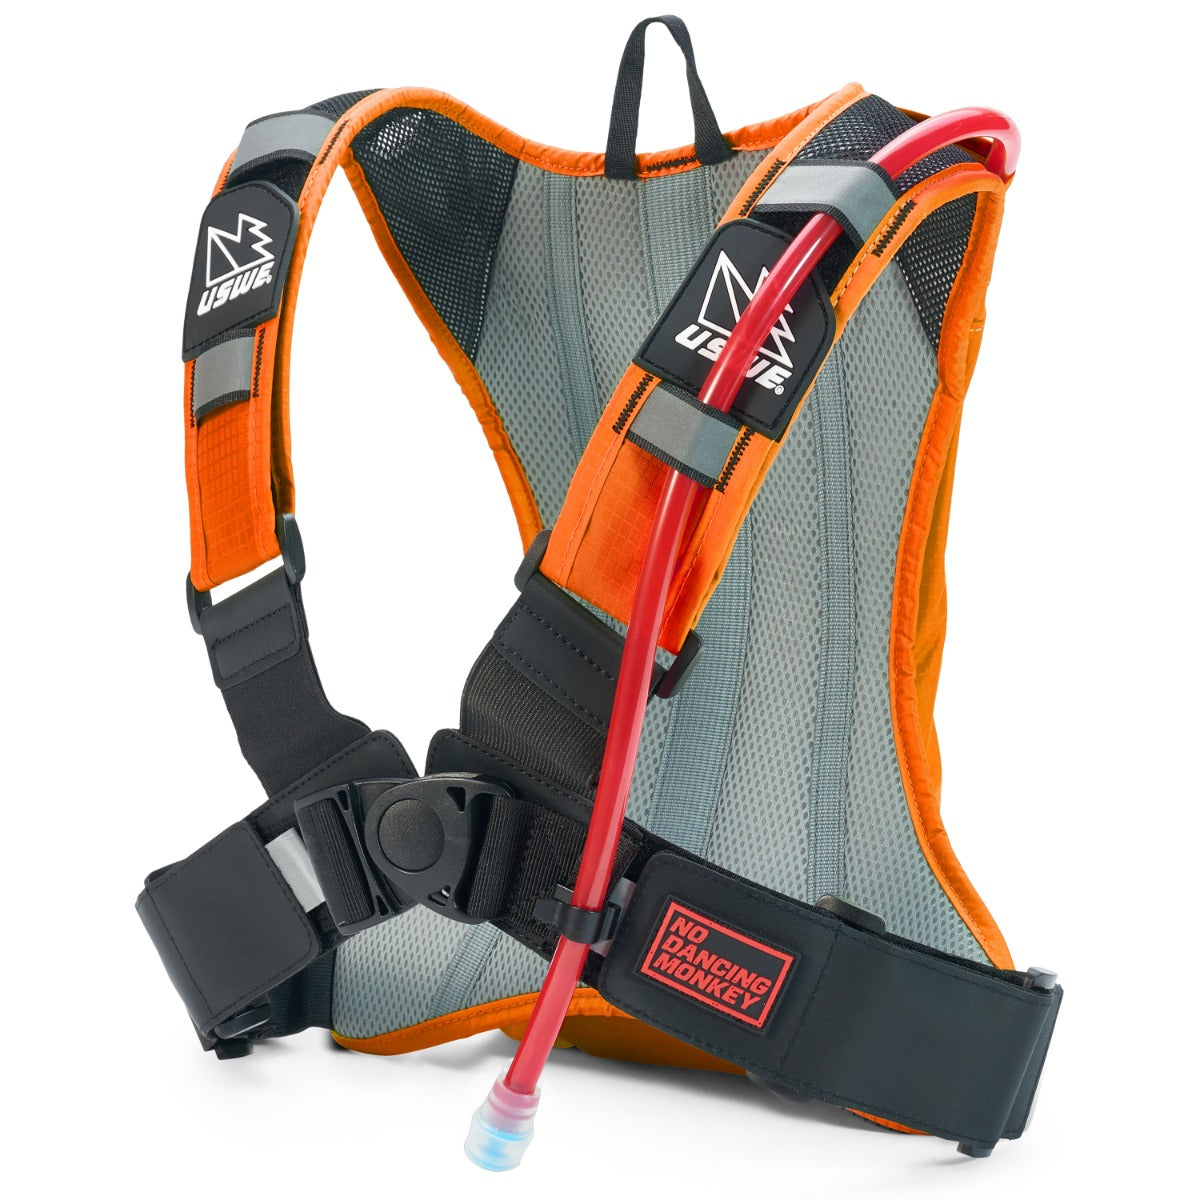 USWE Outlander 2 Hydration Backpack Orange – With 1.5 Litre Bladder